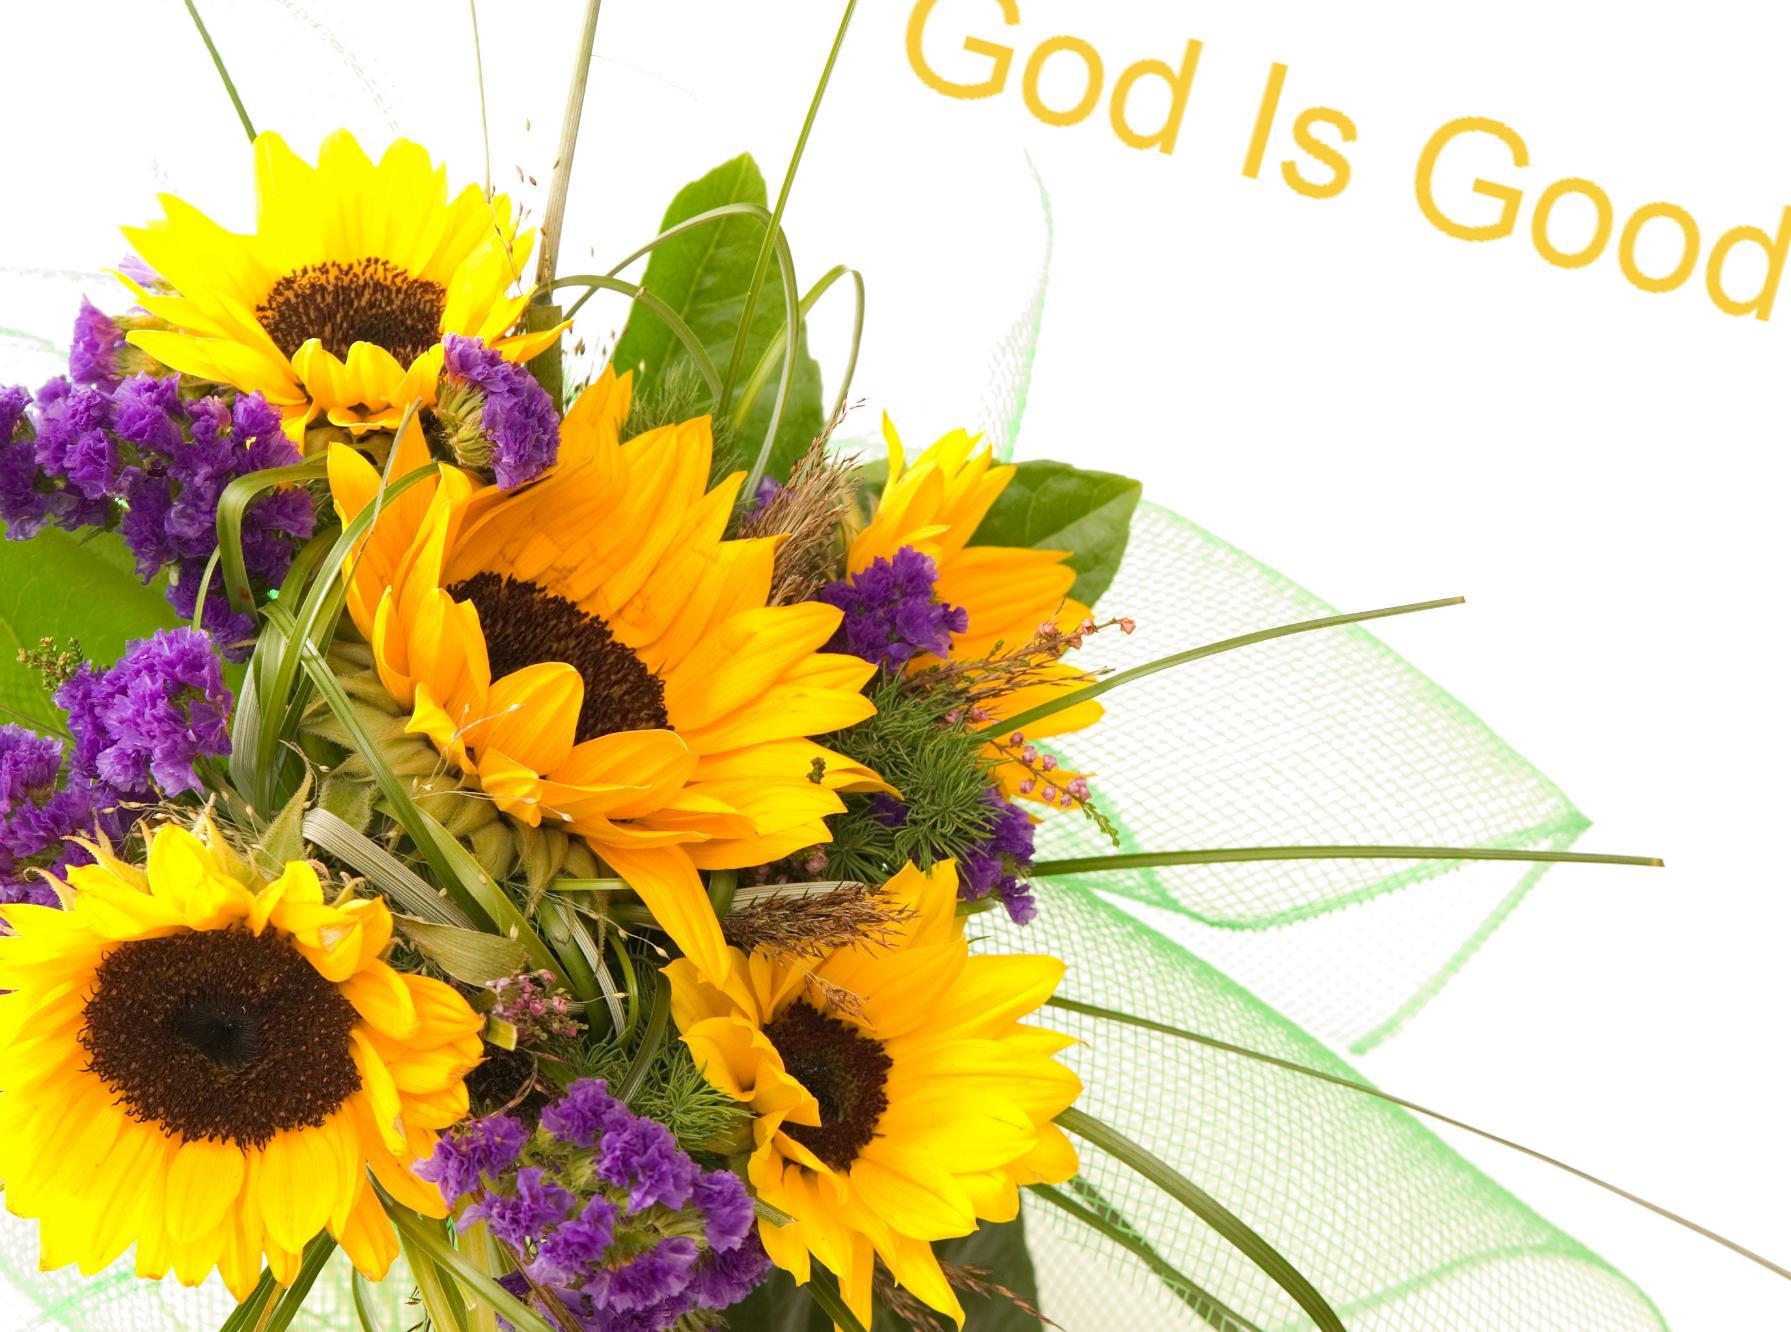 God is good inscription on a flower